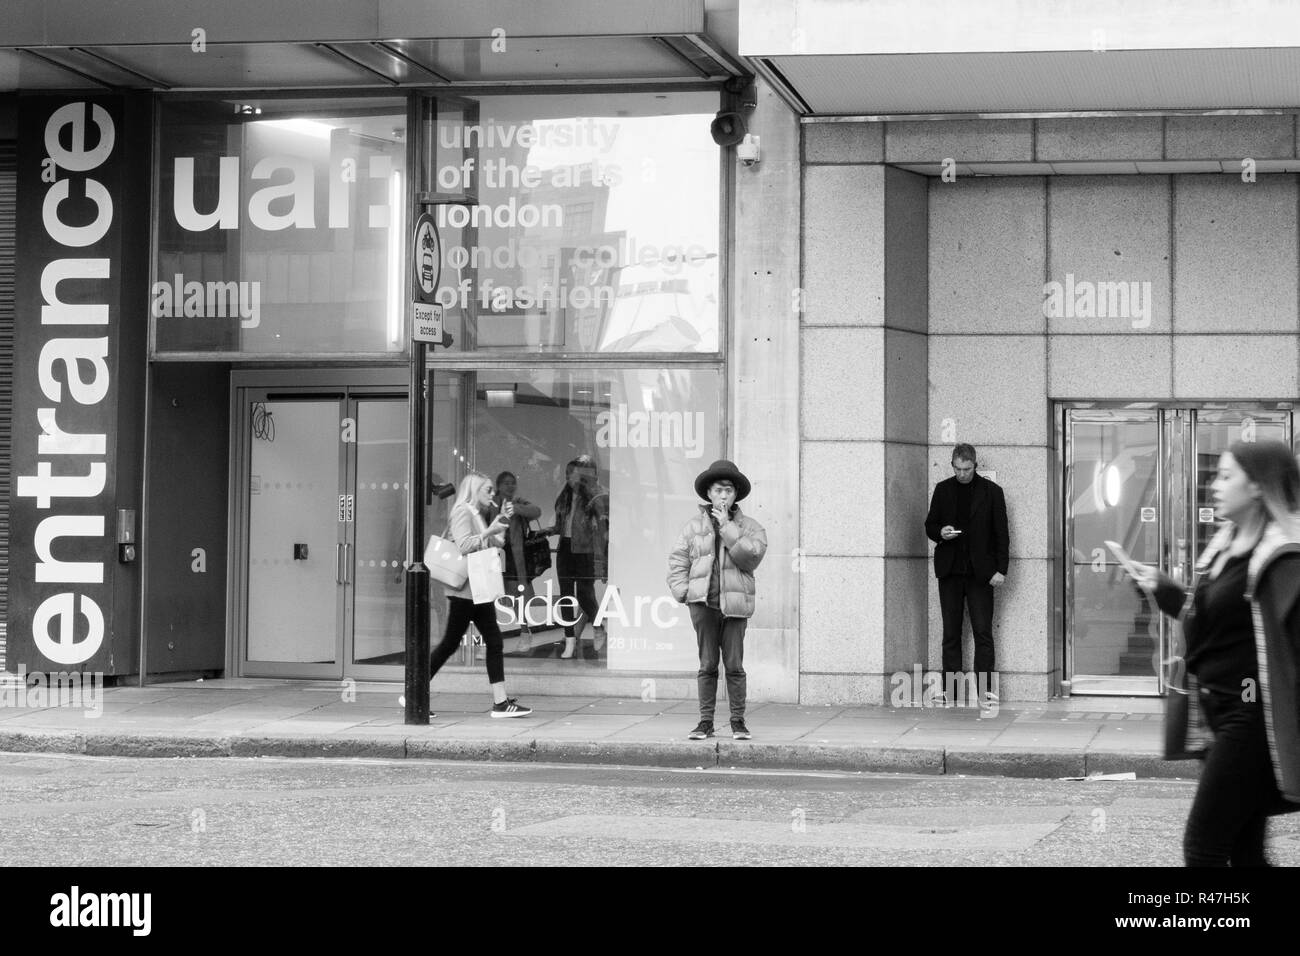 Image en noir et blanc. Jeune personne portant un chapeau à l'extérieur à l'UAL Pharrell London, Londres Uk, UK Banque D'Images